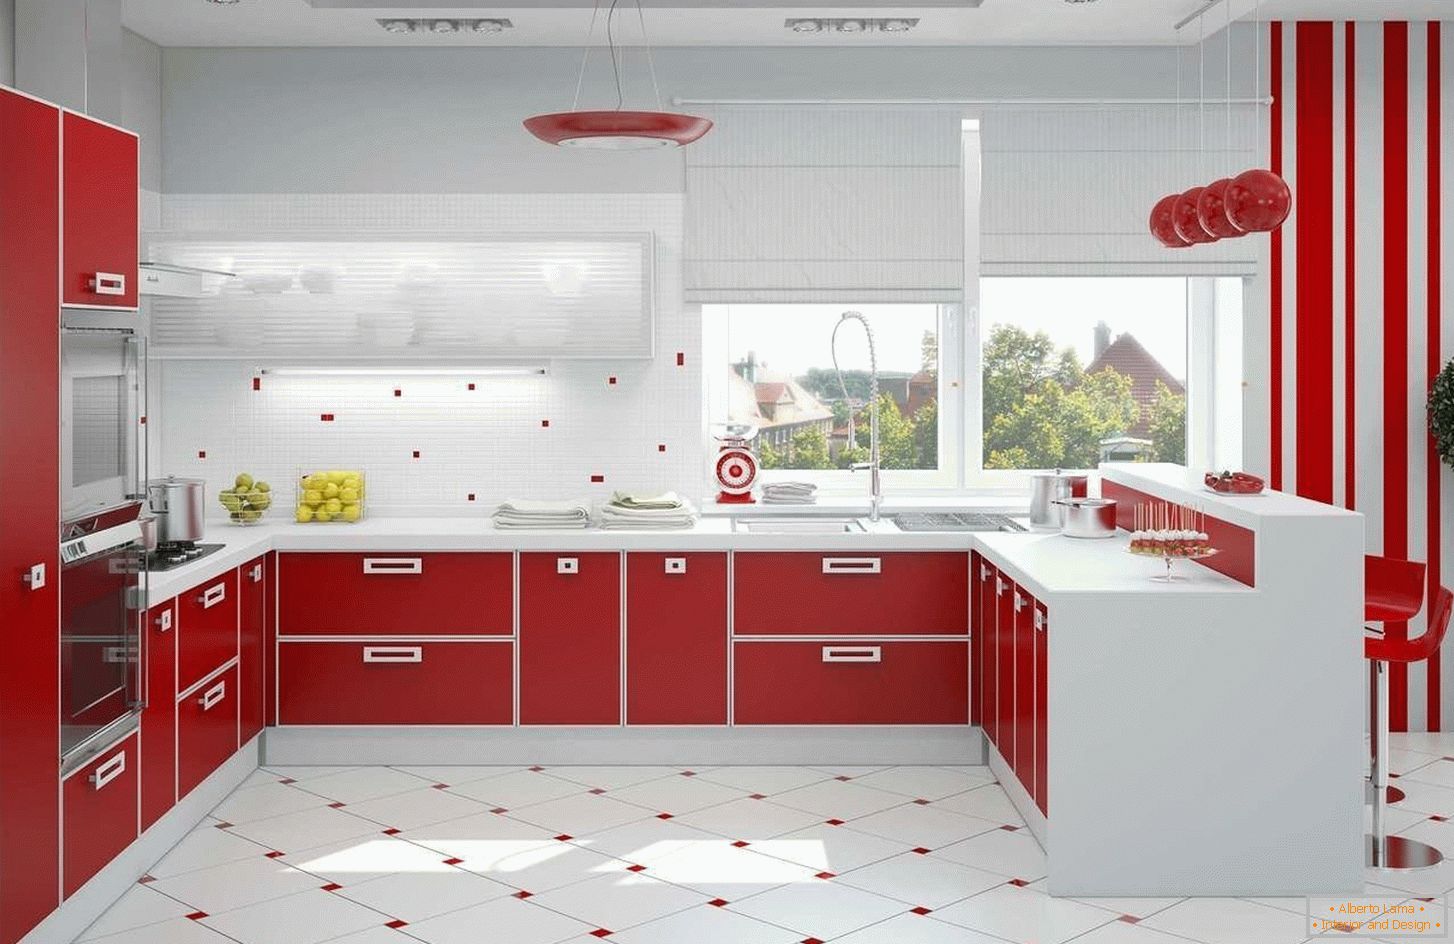 Interior de la cocina roja y blanca